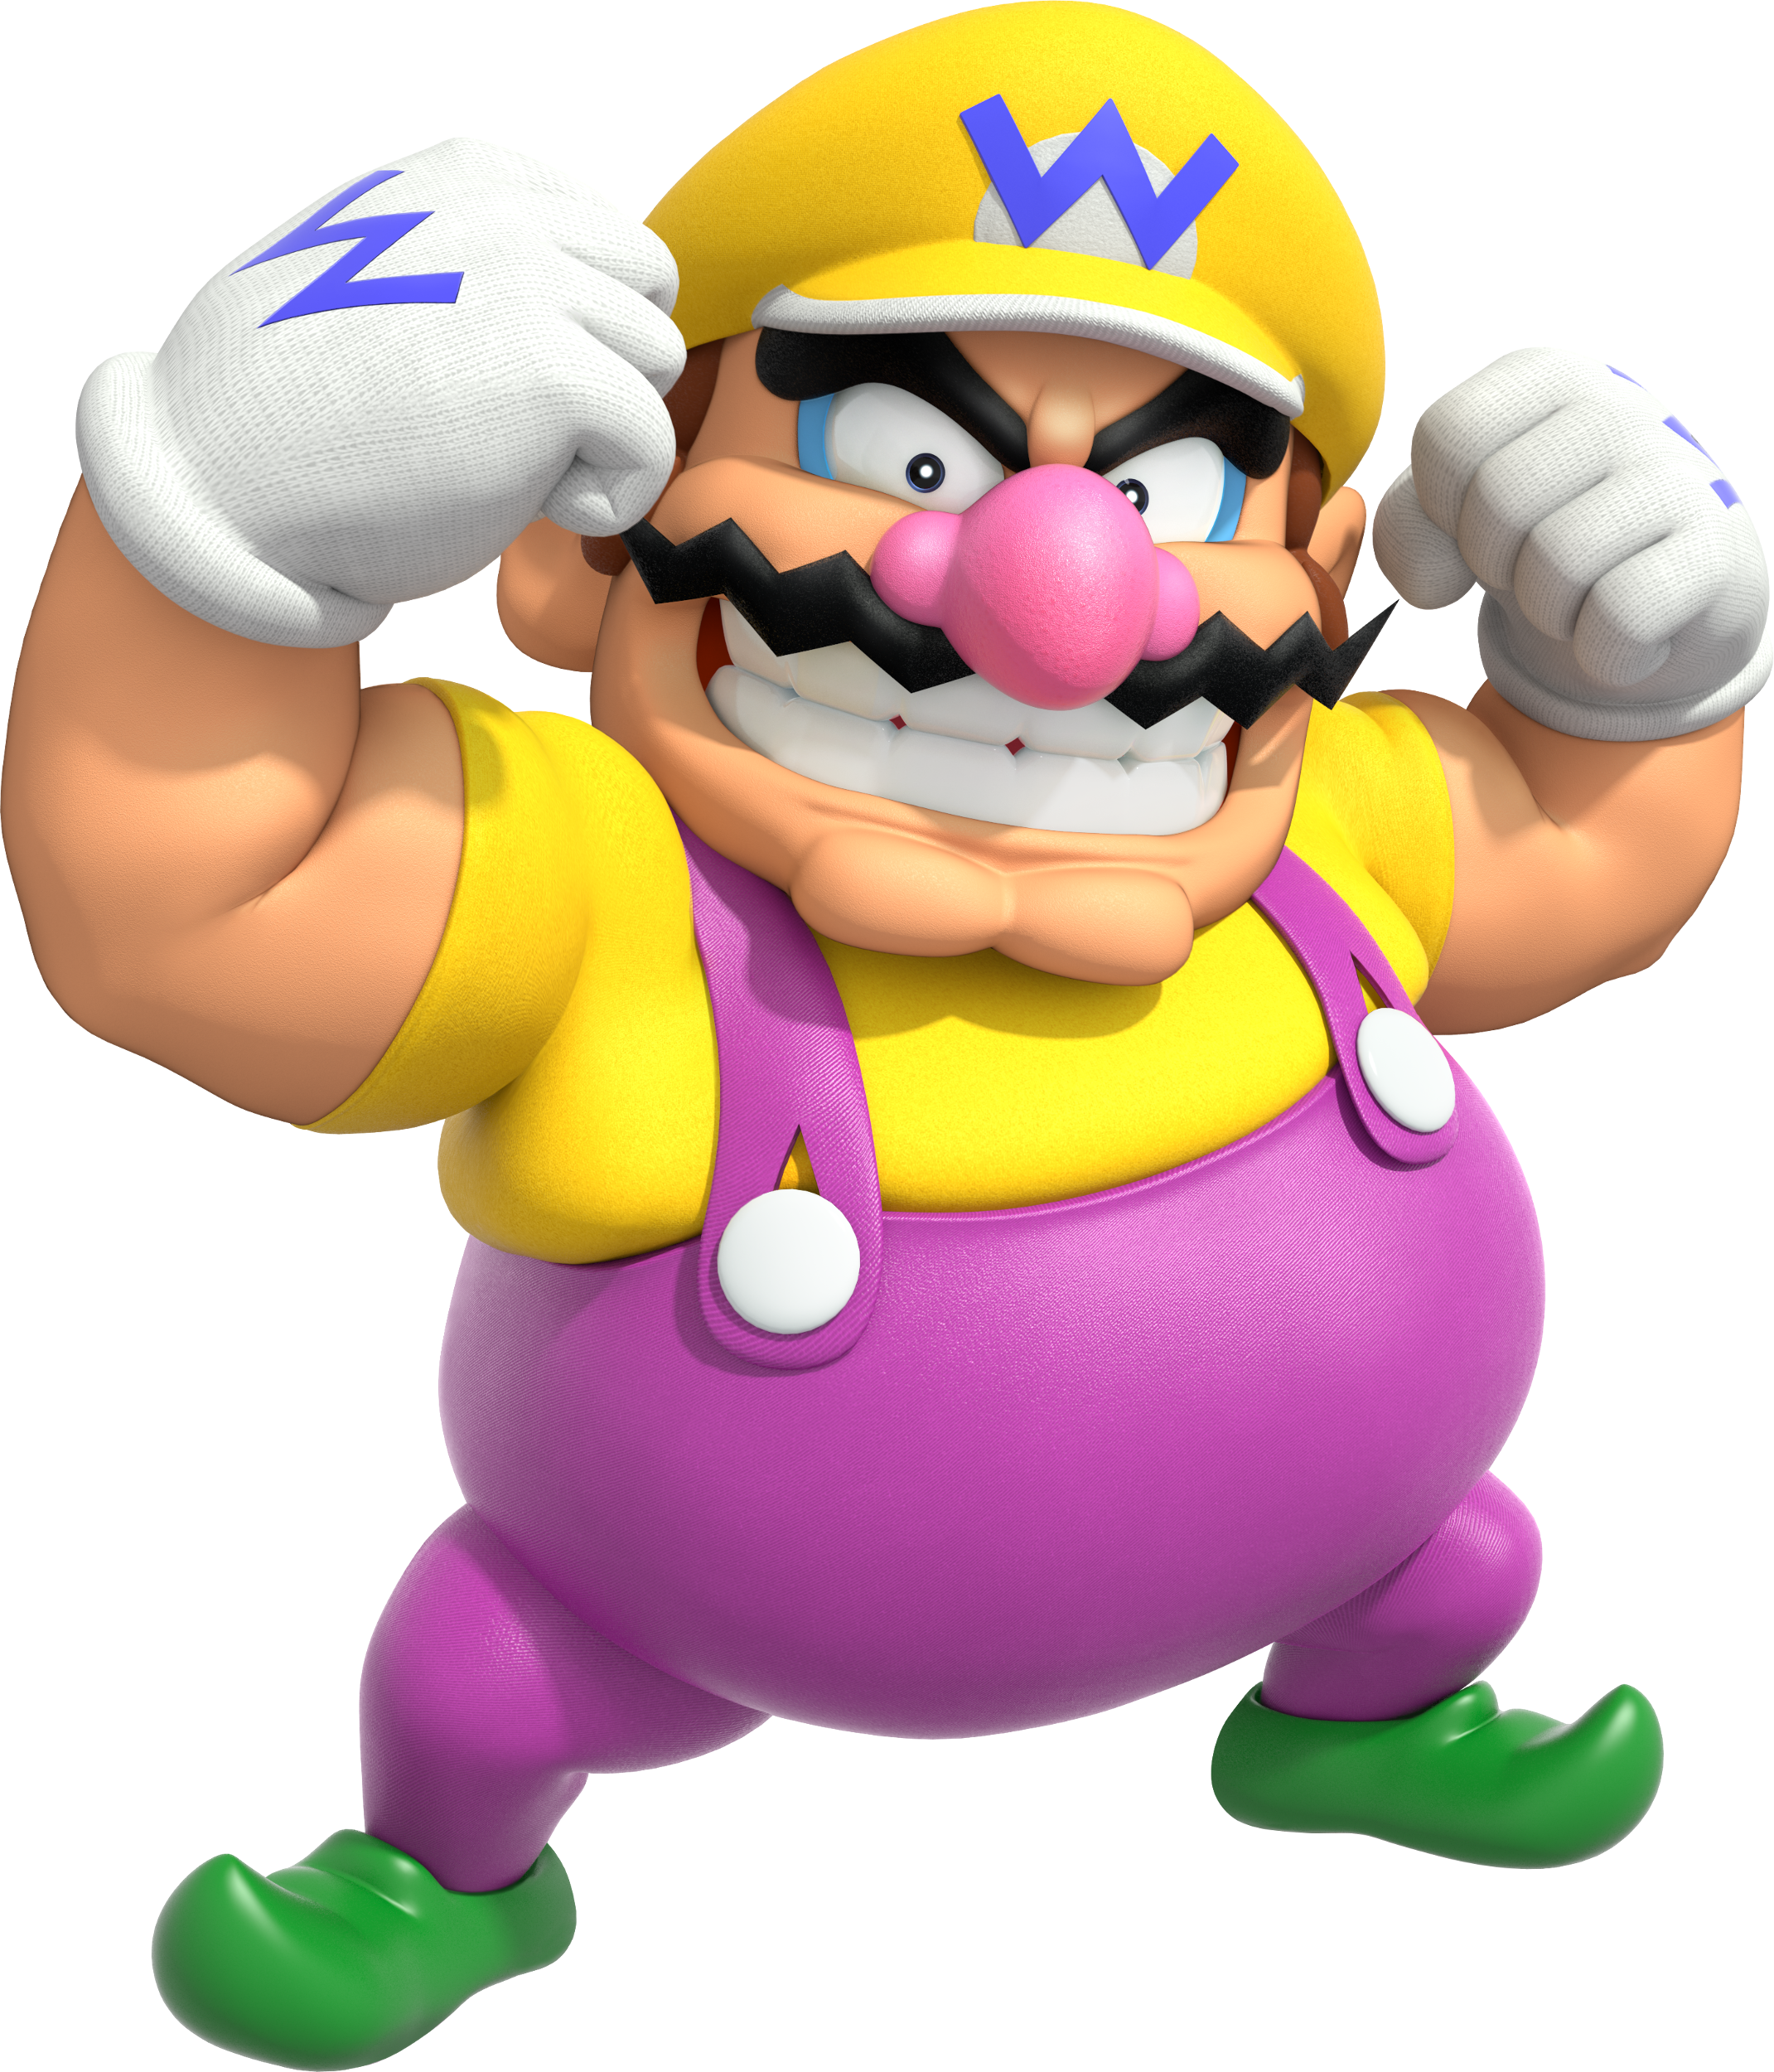 Wario | Super Mario Wiki | Fandom